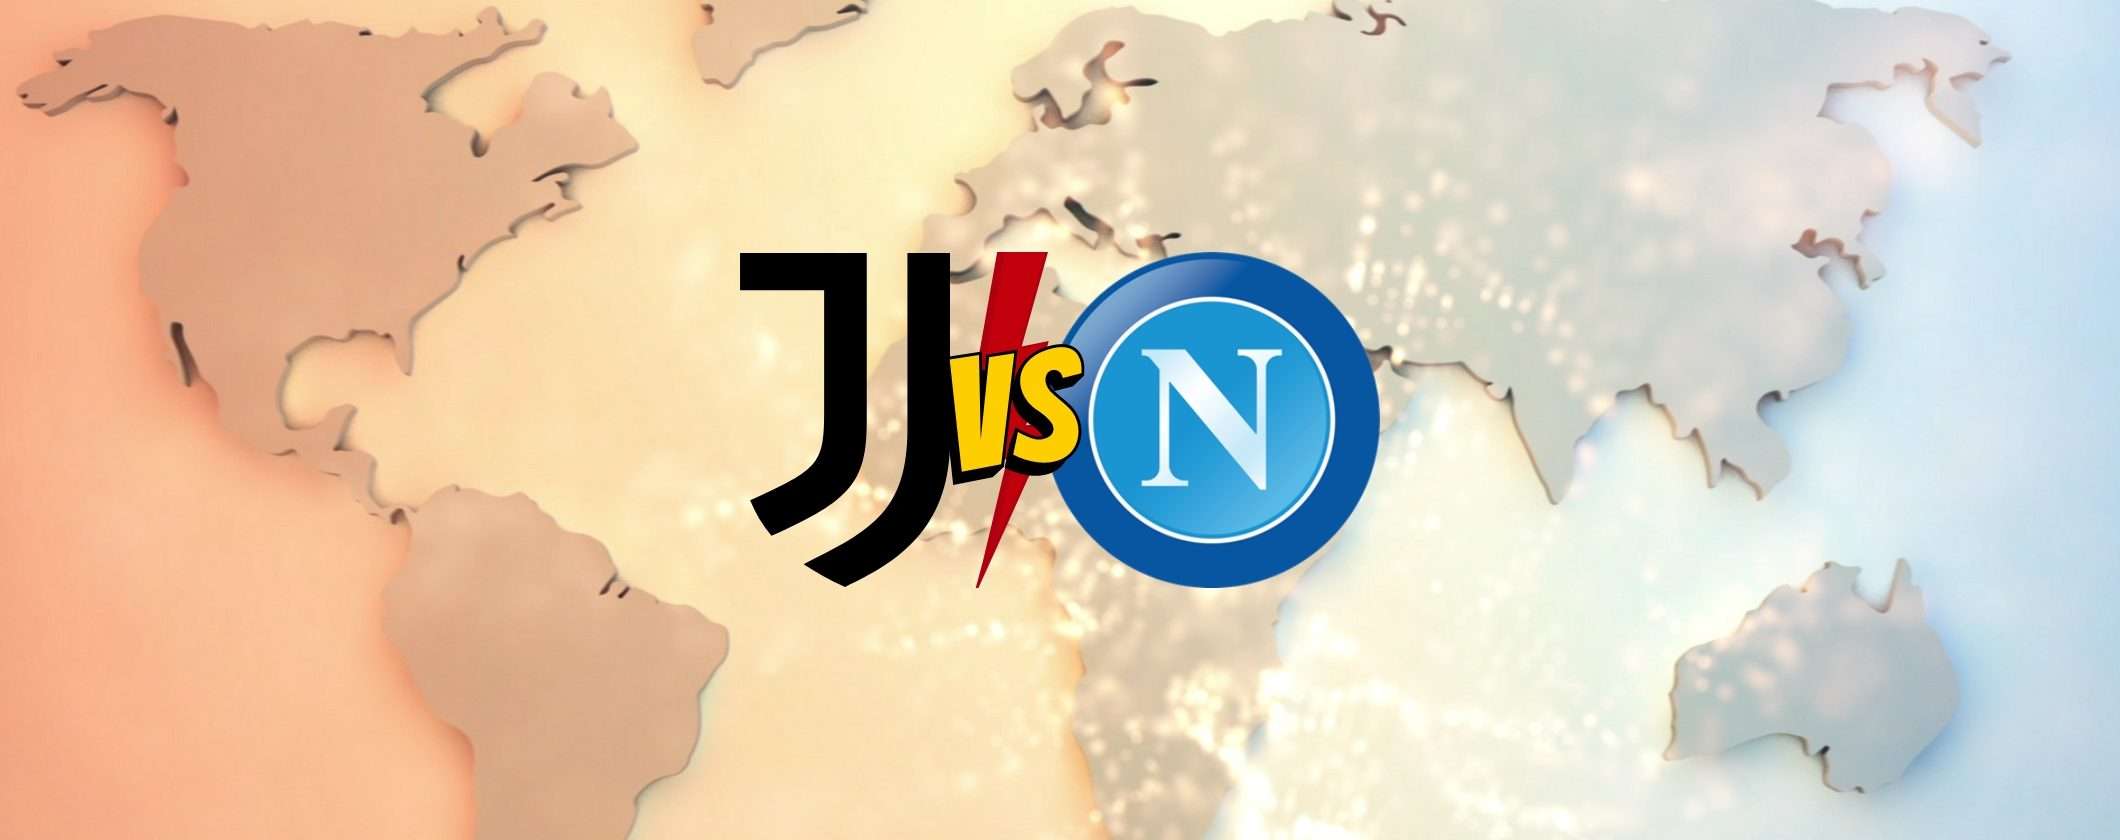 Juventus-Napoli: come vederla in streaming dall'estero